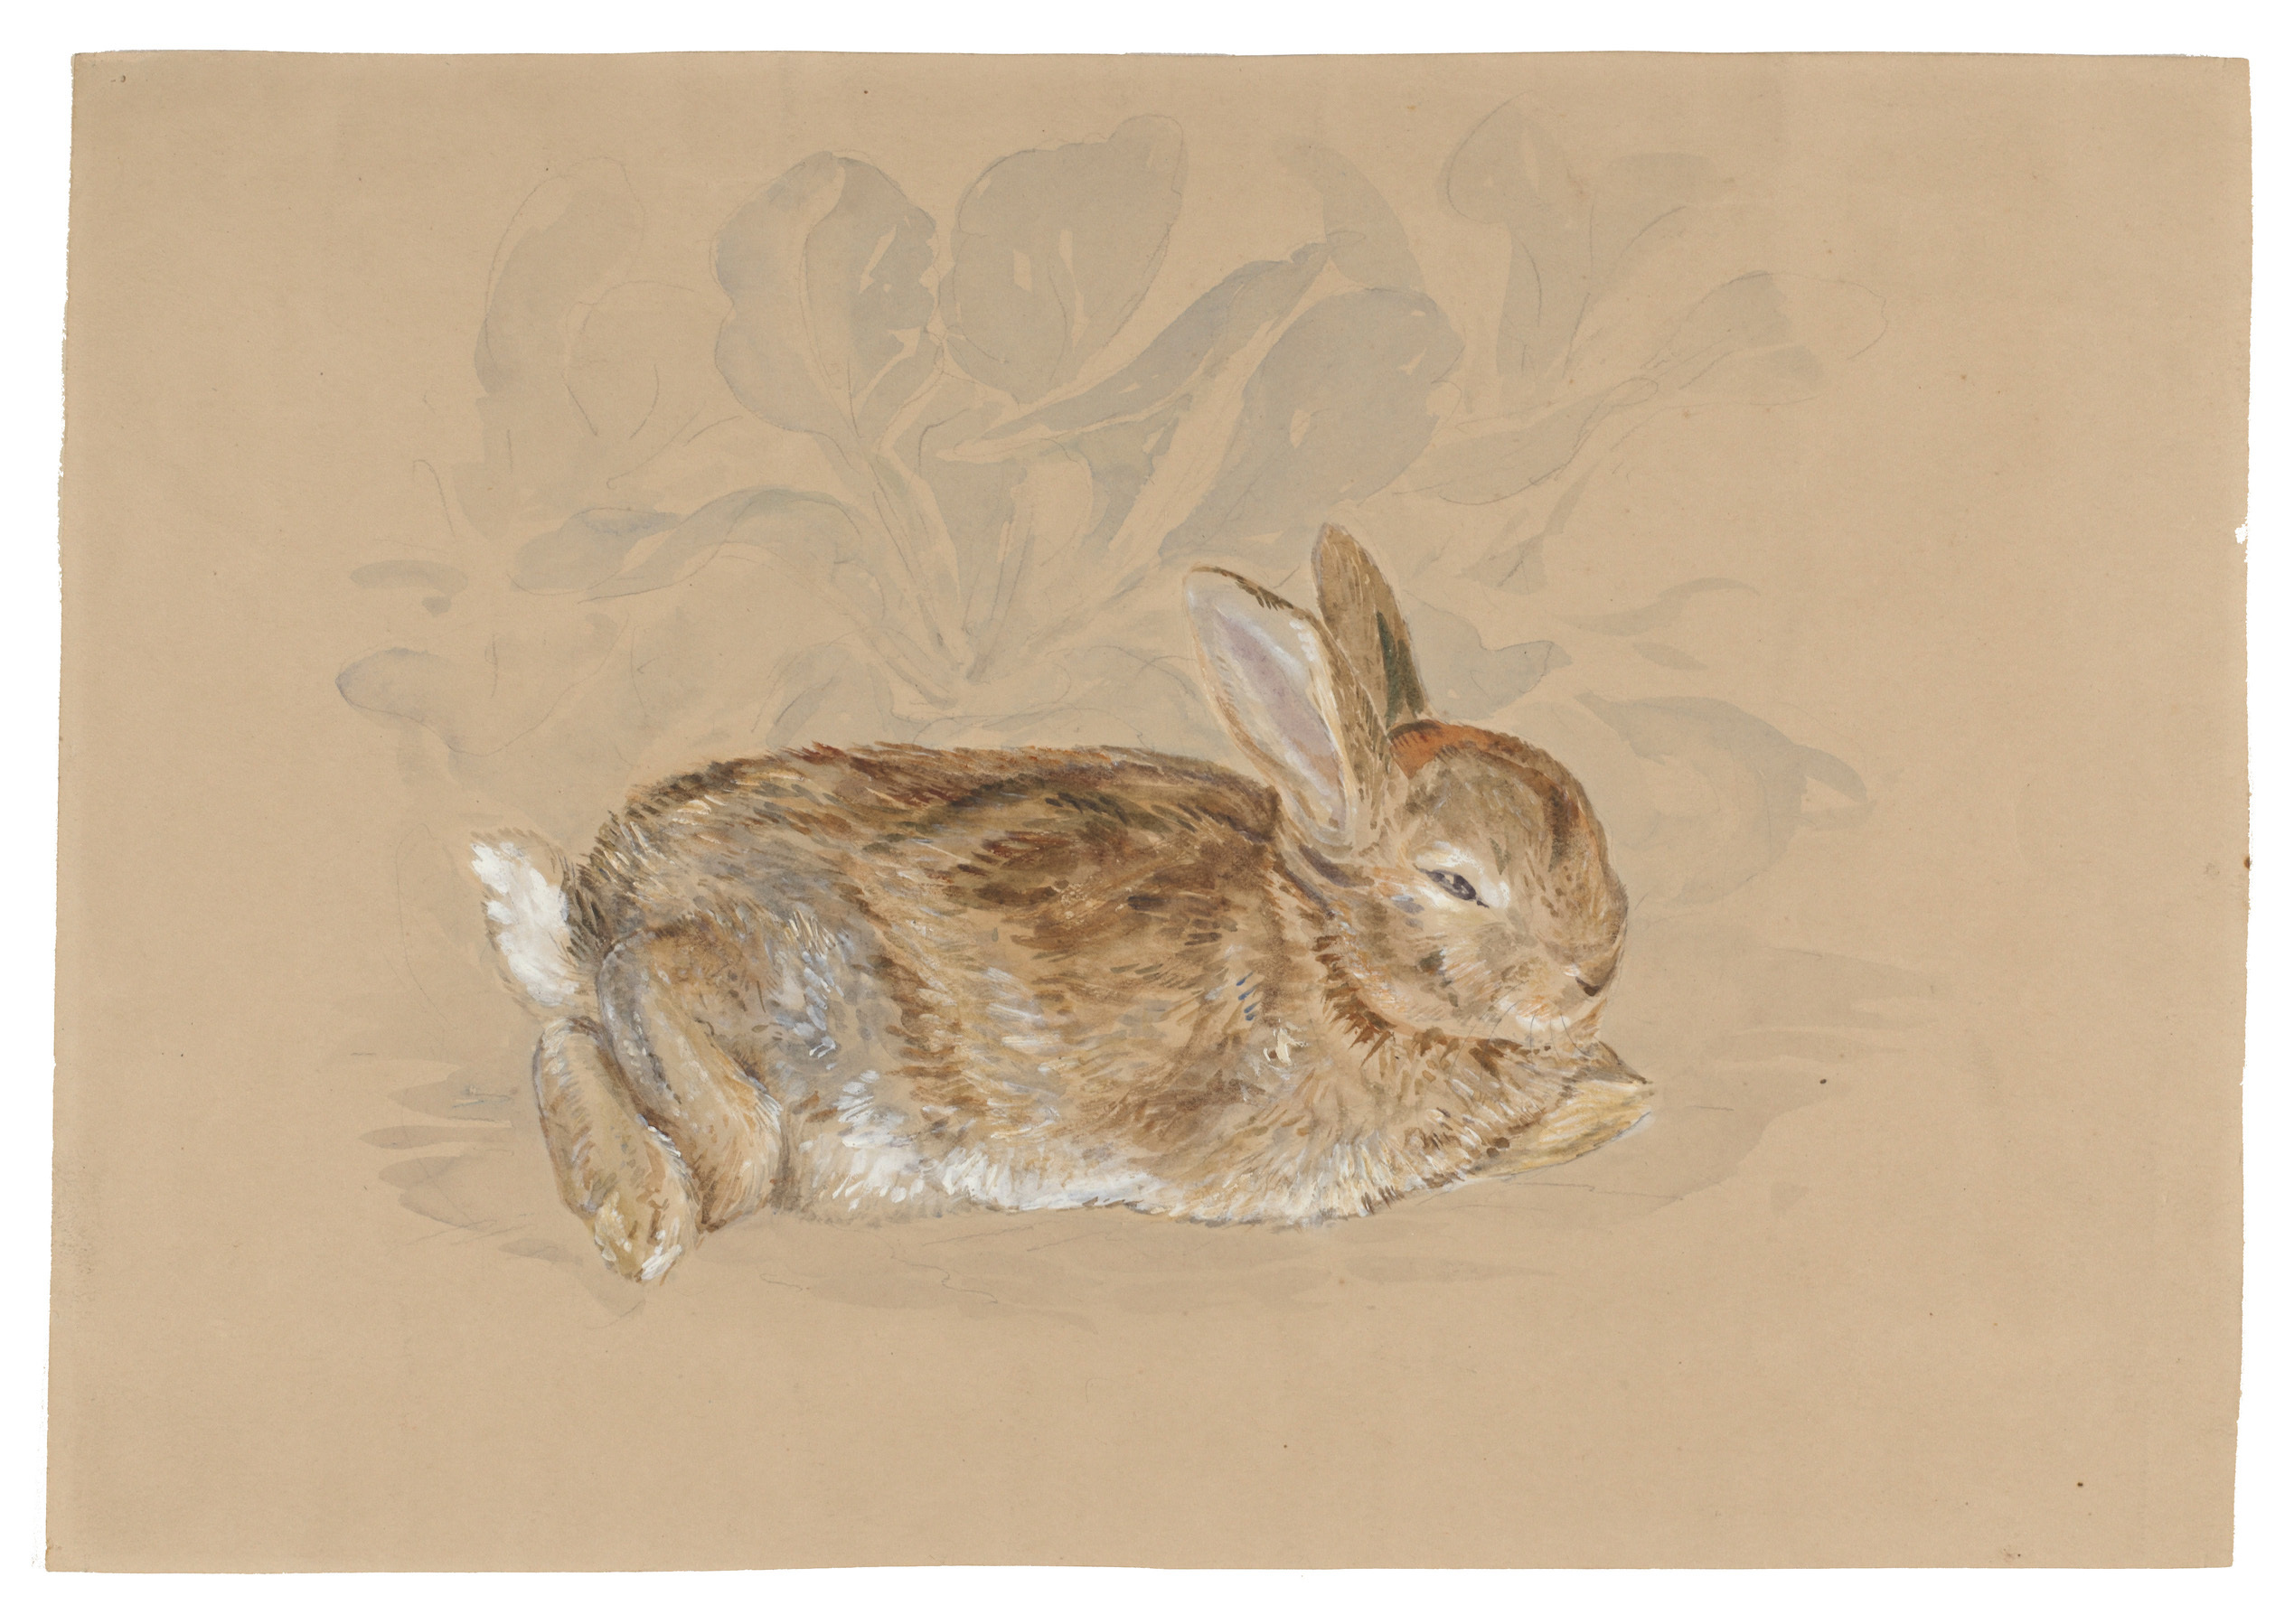 日本初公開となる 「庭の野ウサギ」 ビアトリクス・ポター 1892年 ヴィクトリア・アンド・アルバート博物館（リンダー・コレクションからの寄贈） Courtesy of The Victoria and Albert Museum and Frederick Warne & Co.